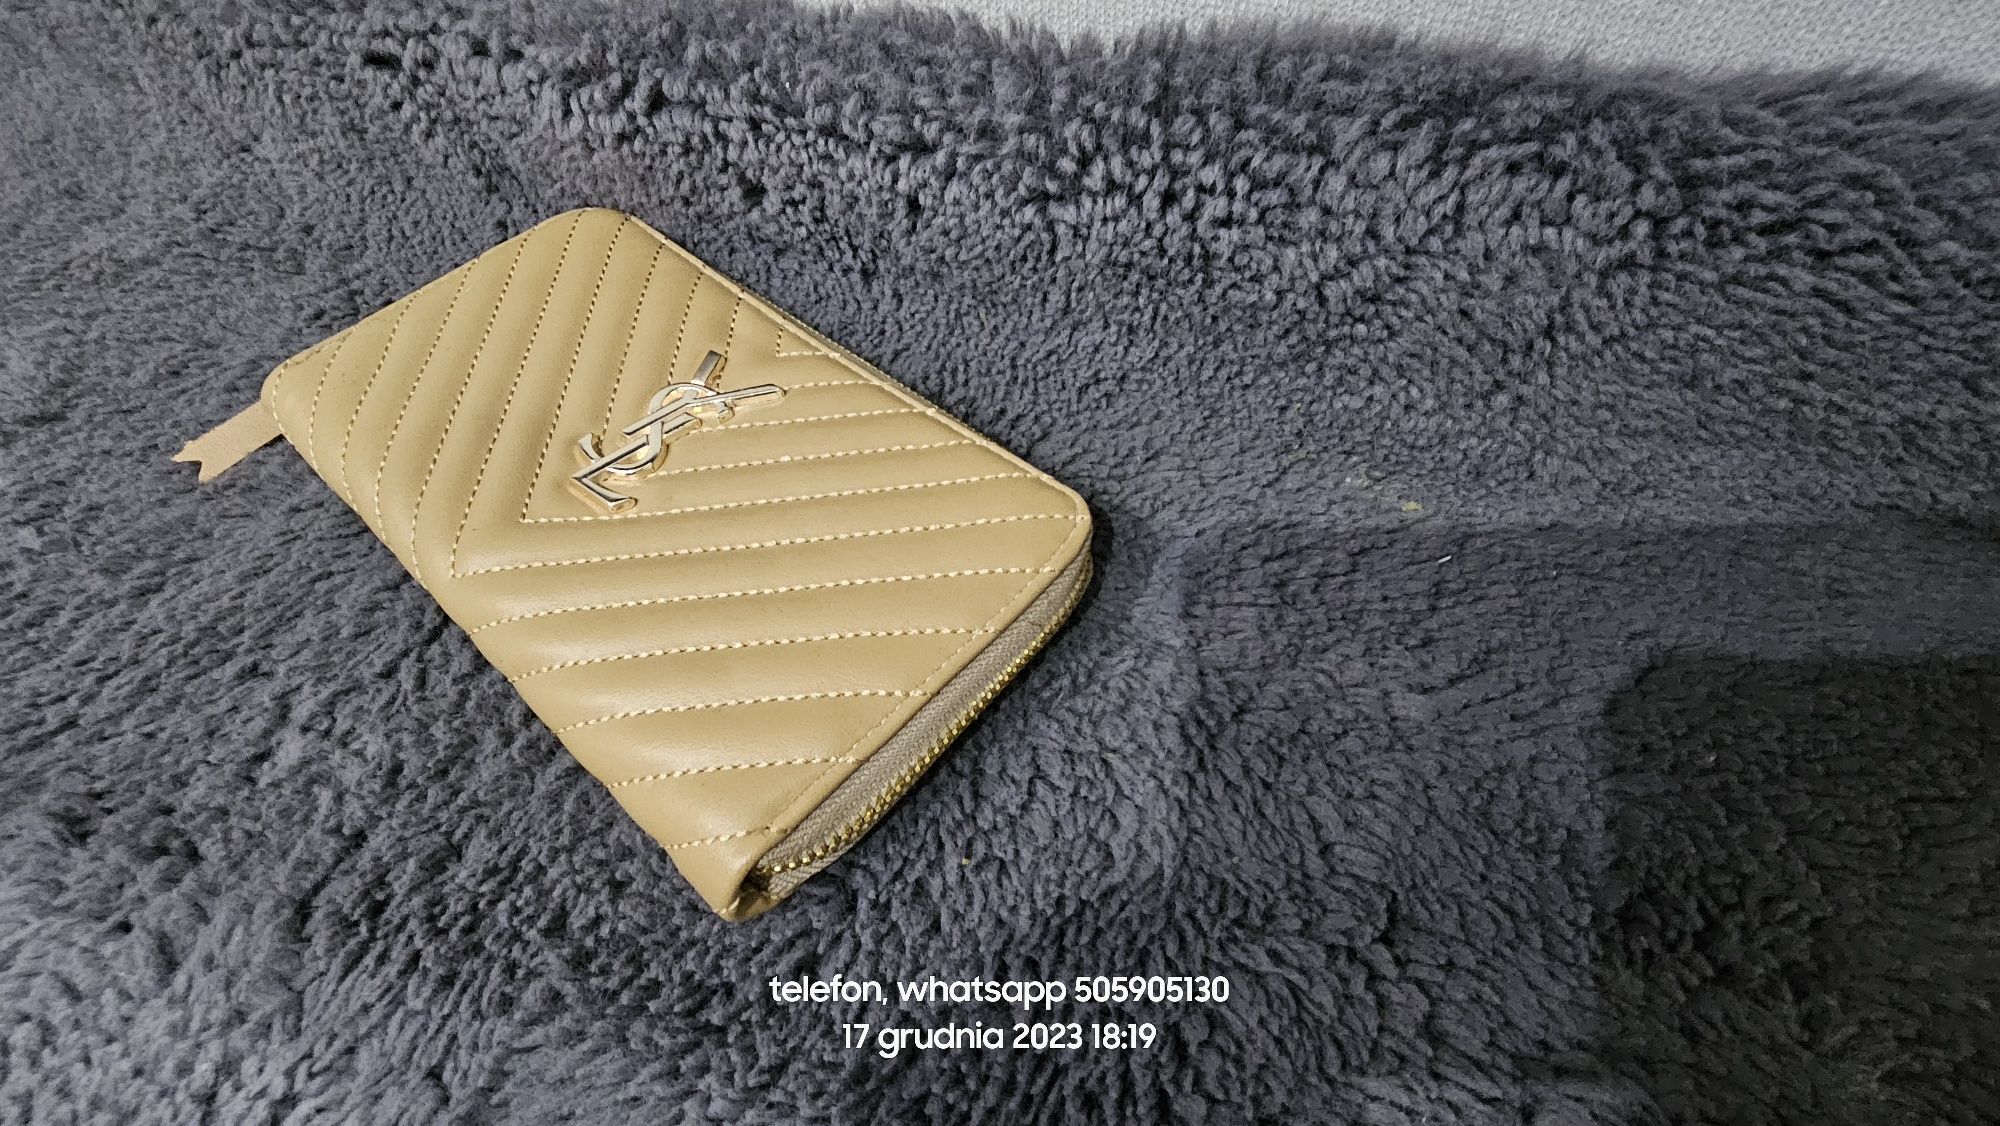 Cappuccino portfel zlote logo ysl złote logo wysoka jakość